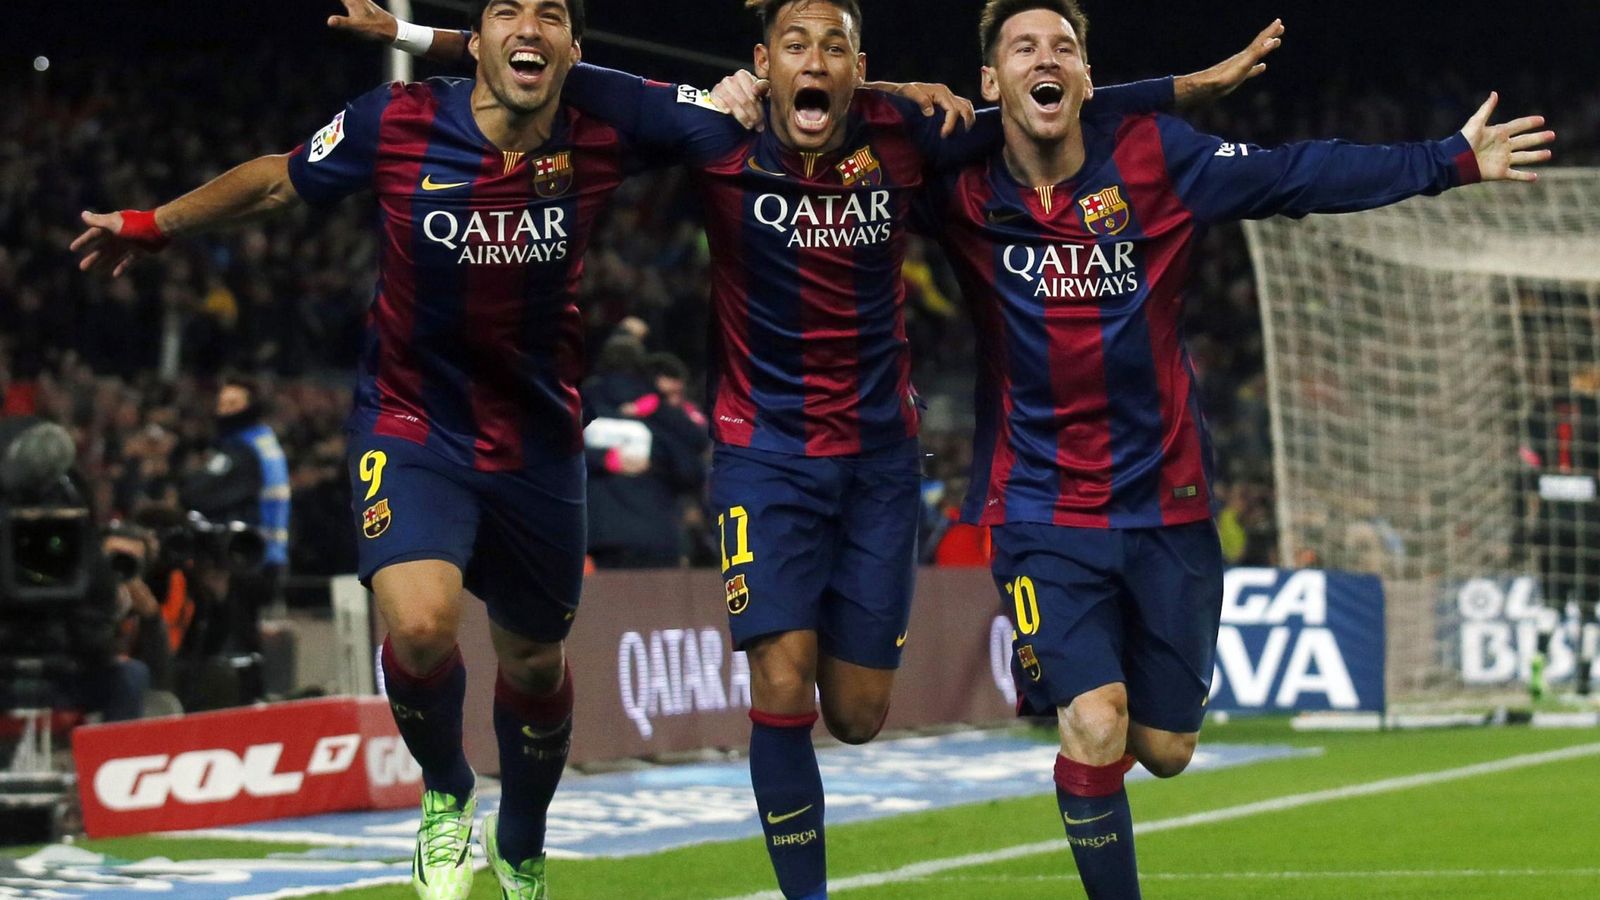 Foto: Luis Suárez, Neymar y Messi serán titulares ante el Eibar (Reuters).